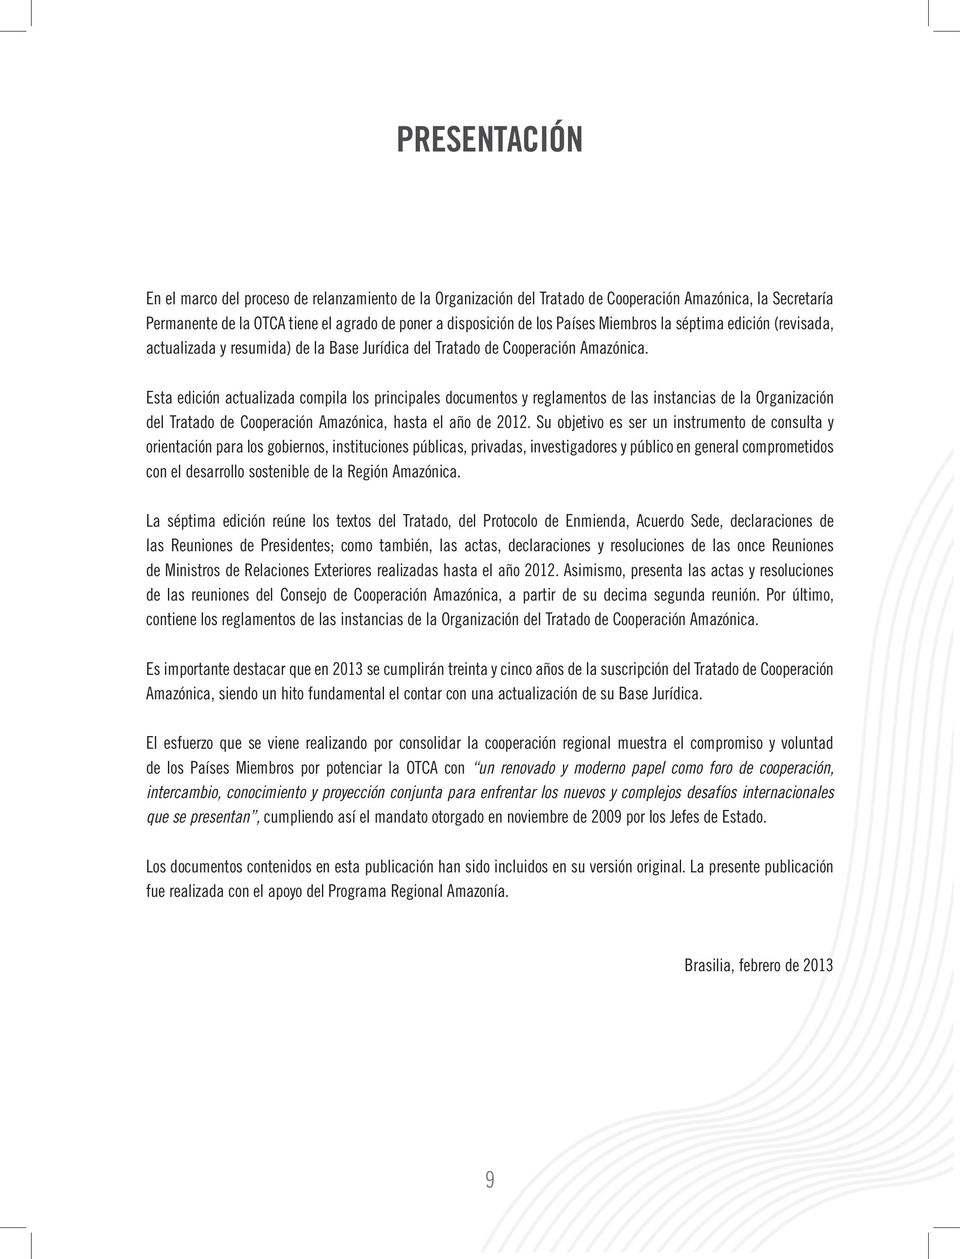 Esta edición actualizada compila los principales documentos y reglamentos de las instancias de la Organización del Tratado de Cooperación Amazónica, hasta el año de 2012.